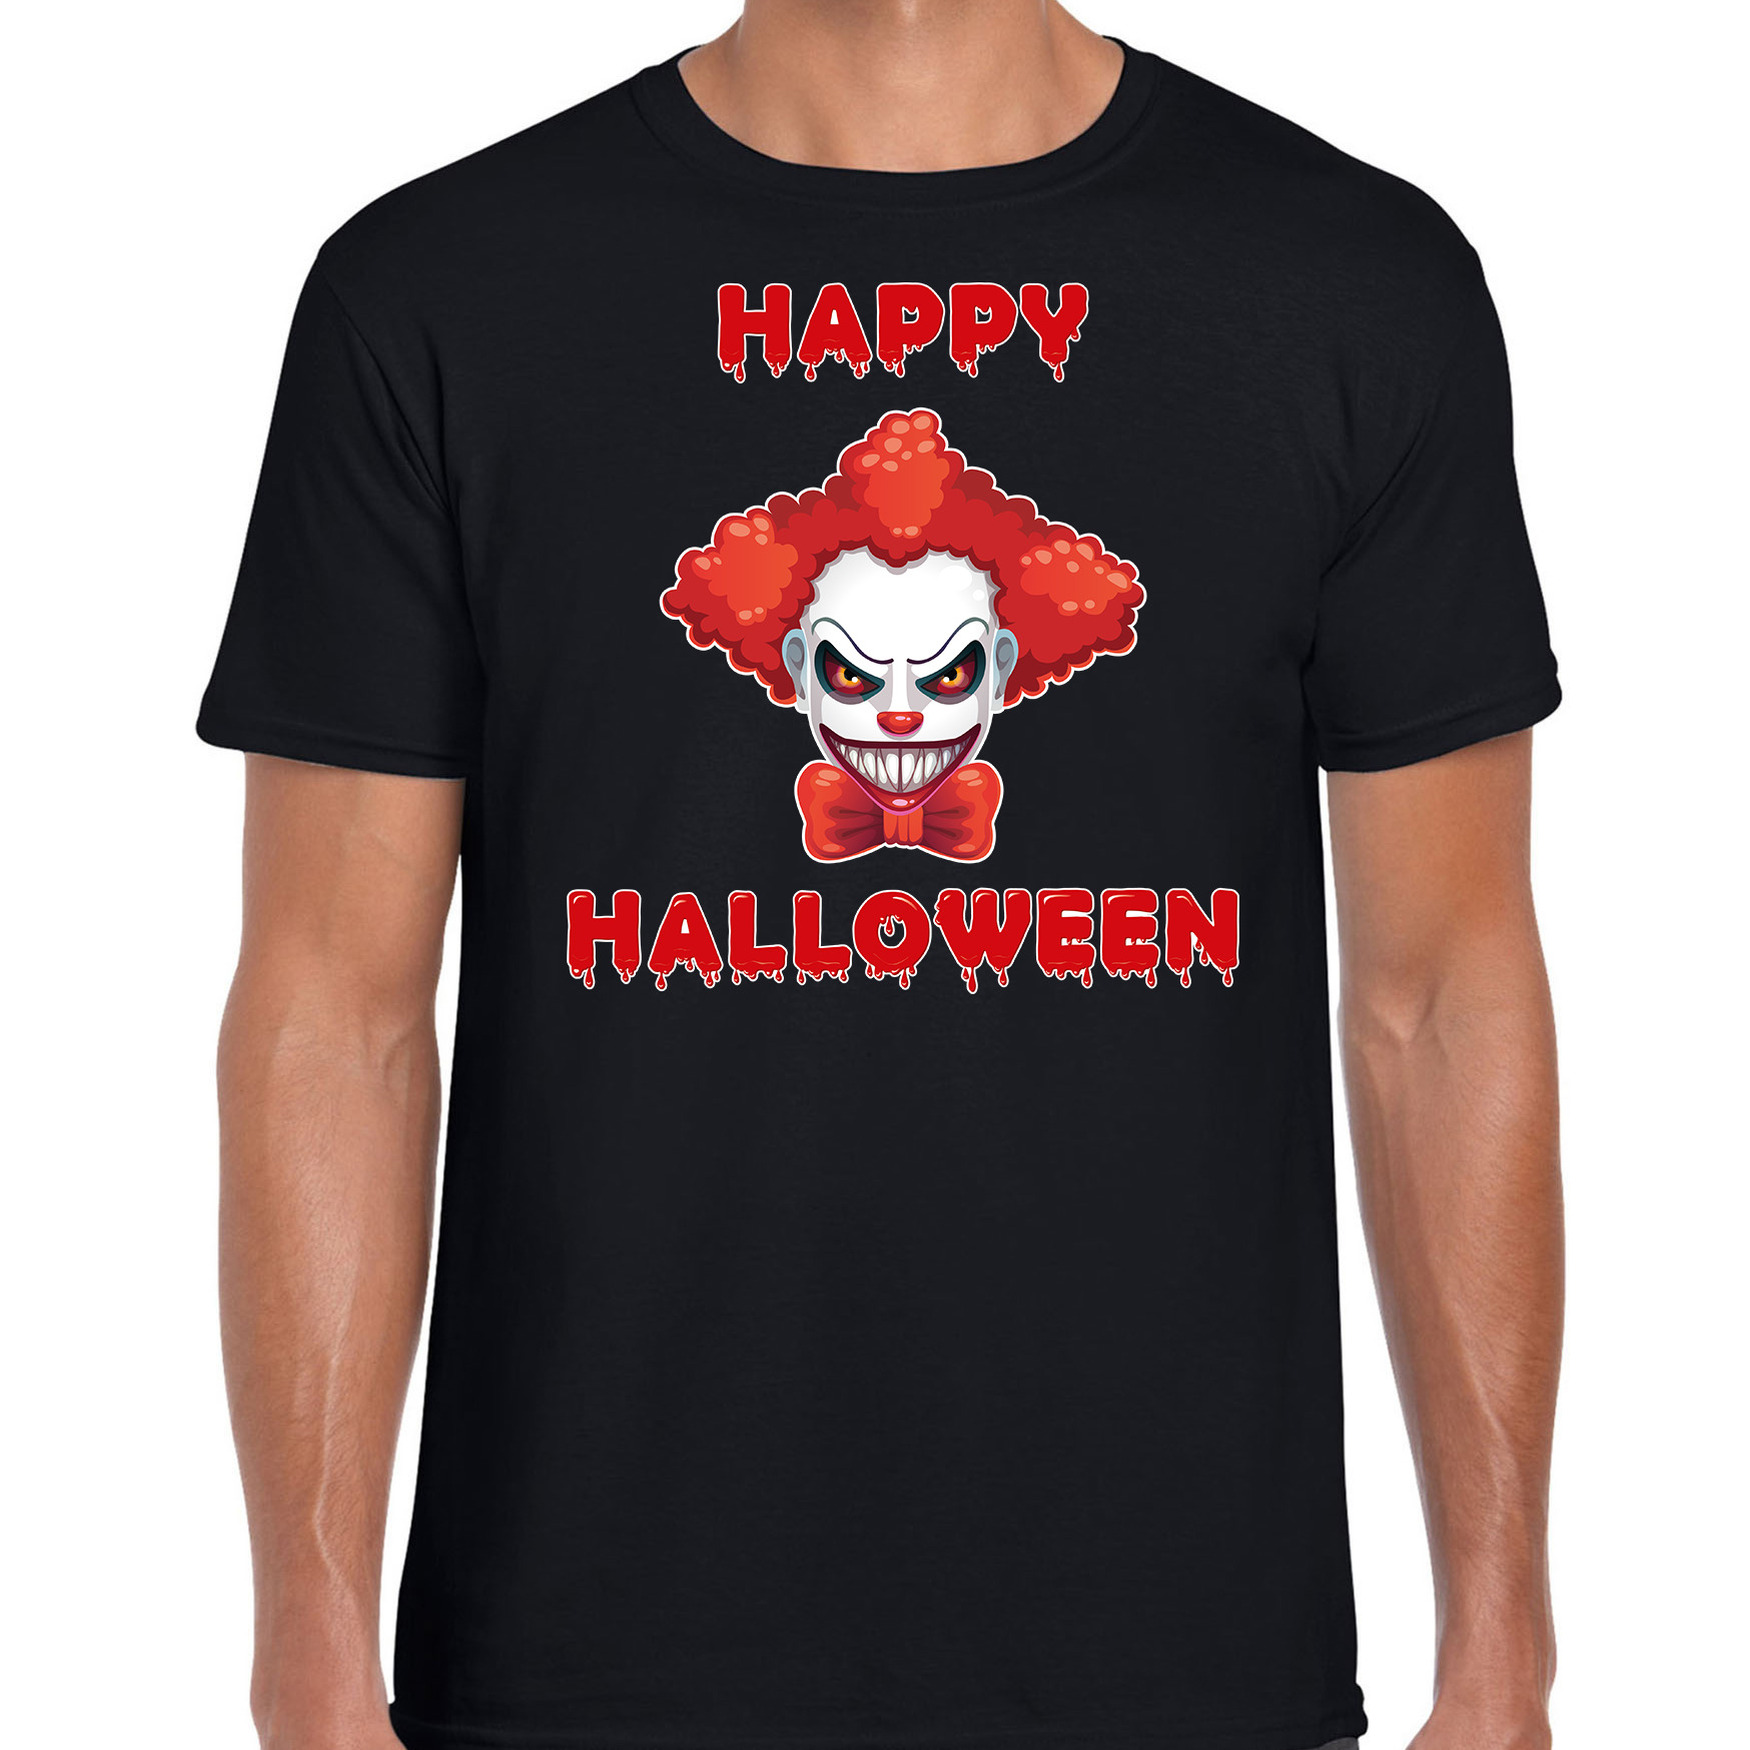 Halloween - Happy Halloween rode horror clown verkleed t-shirt zwart voor heren